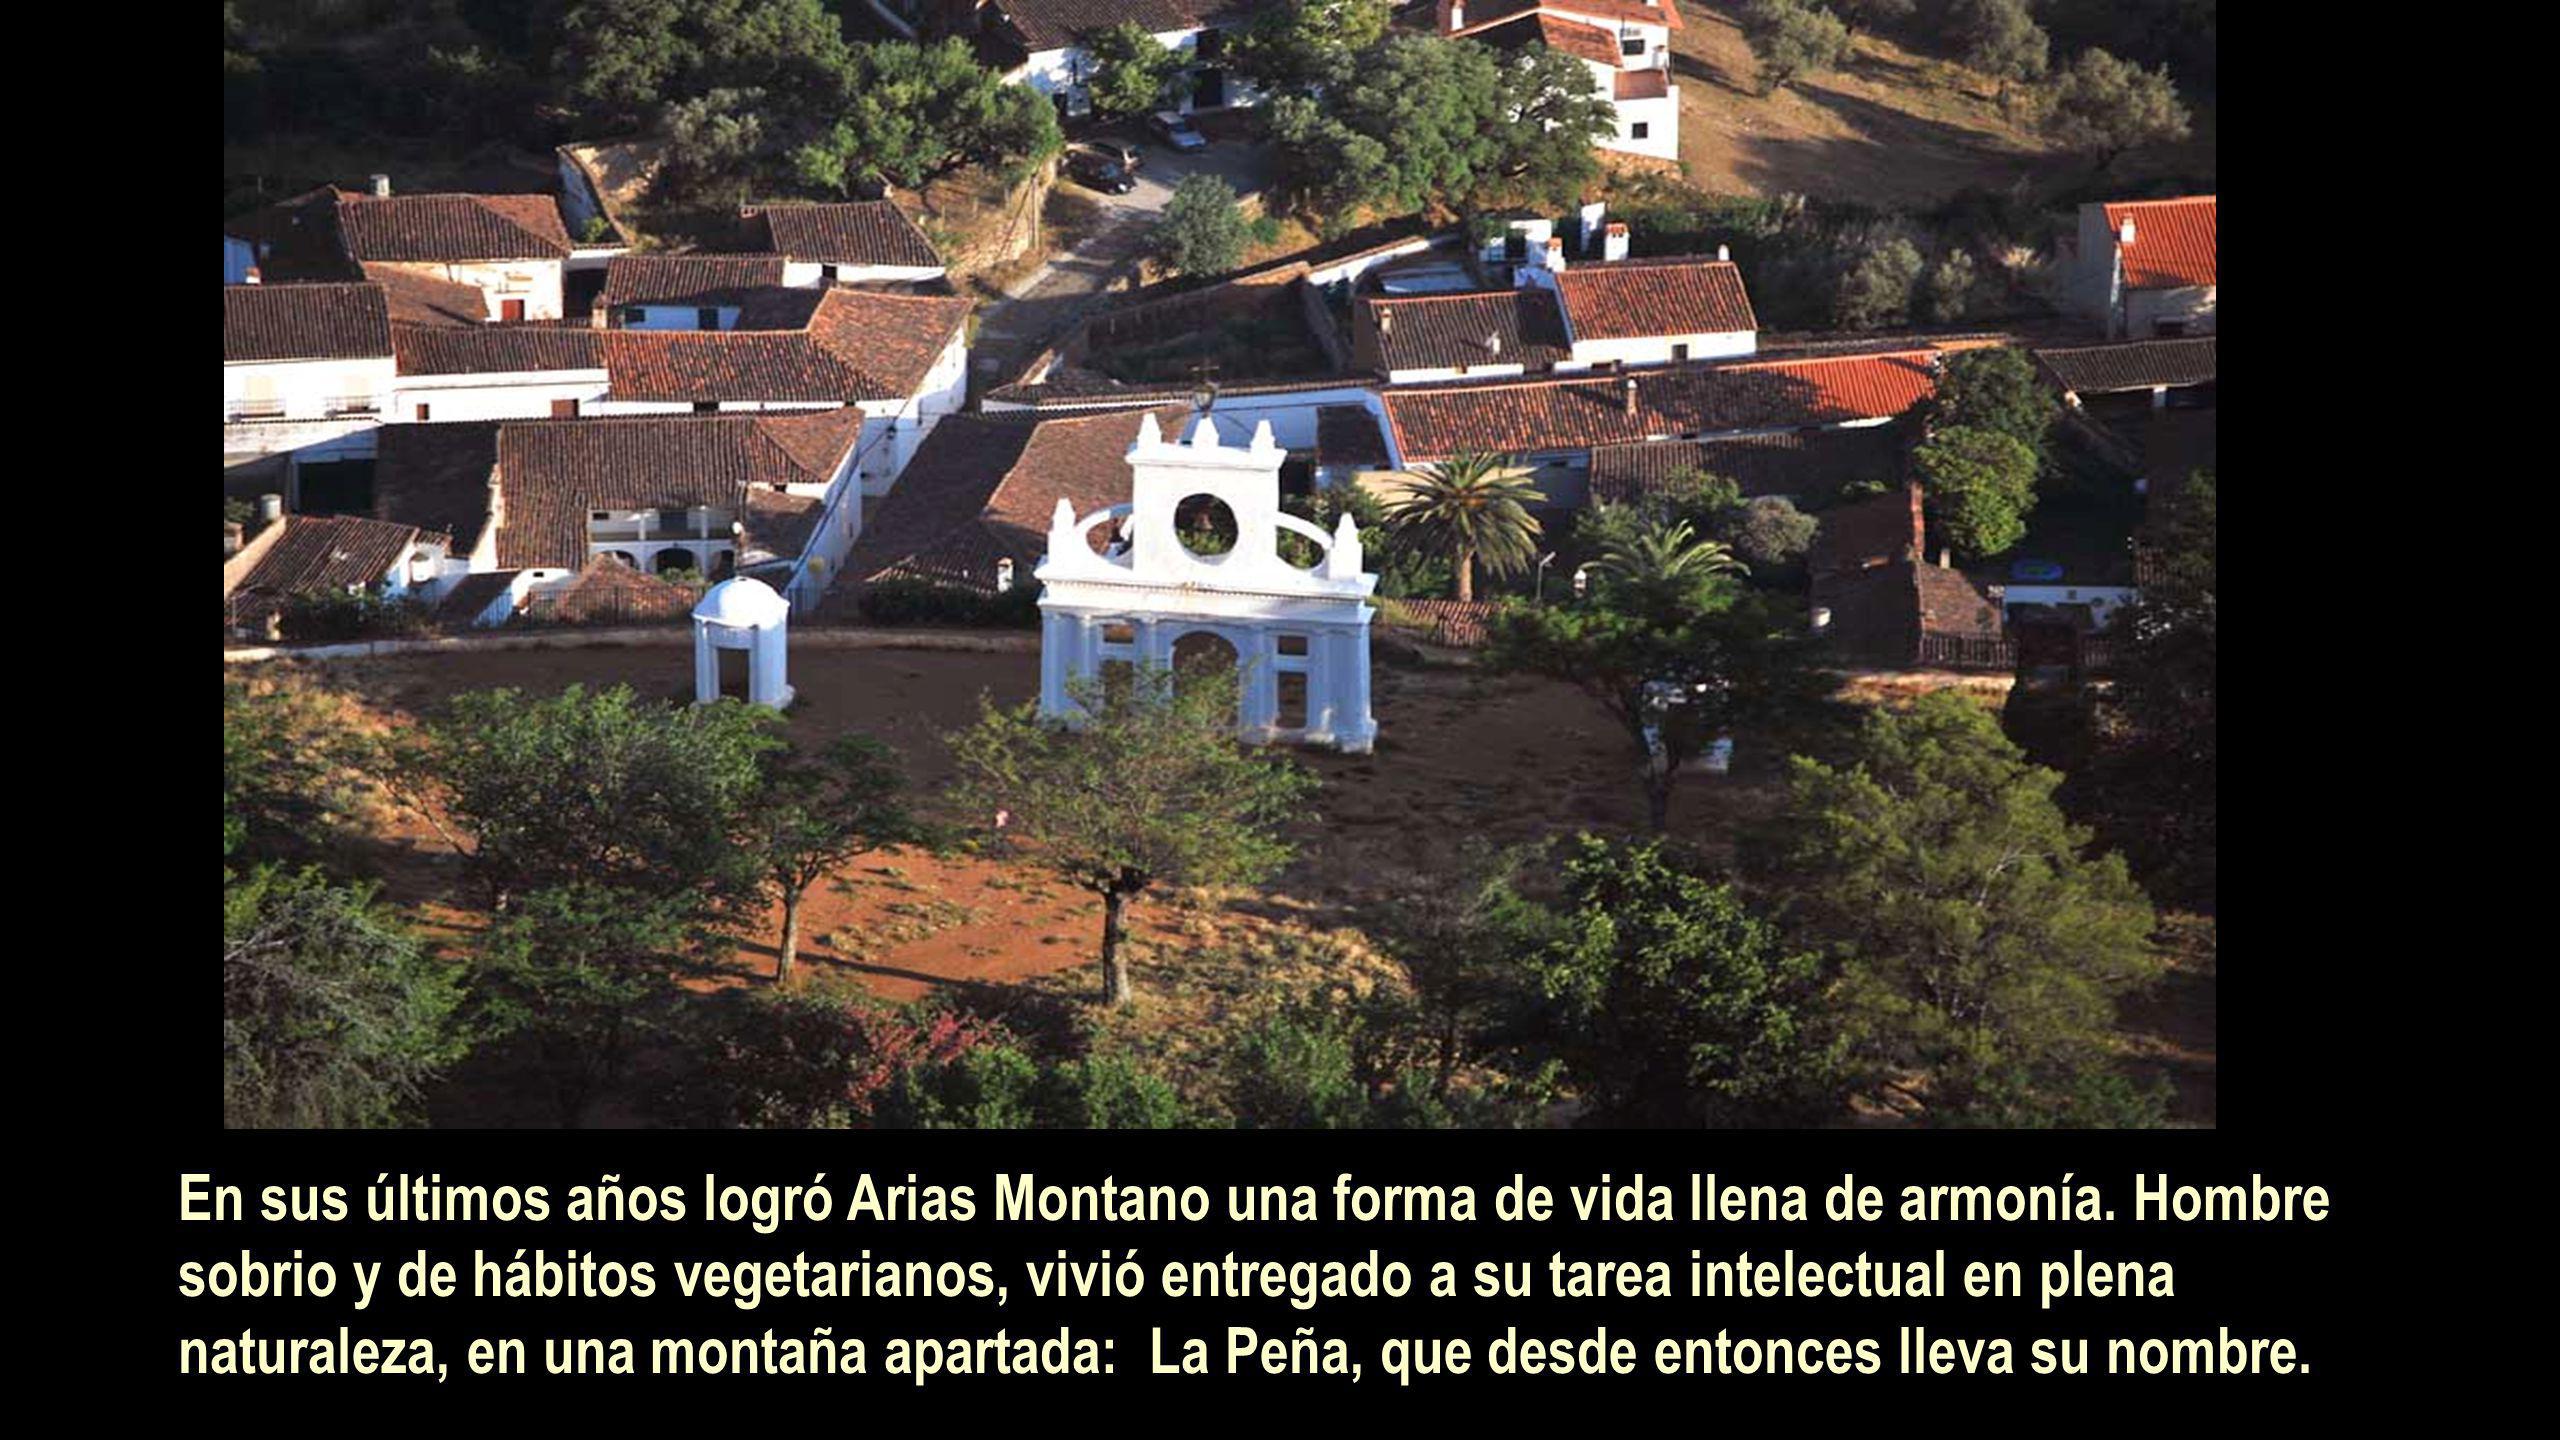 En sus últimos años logró Arias Montano una forma de vida llena de armonía.